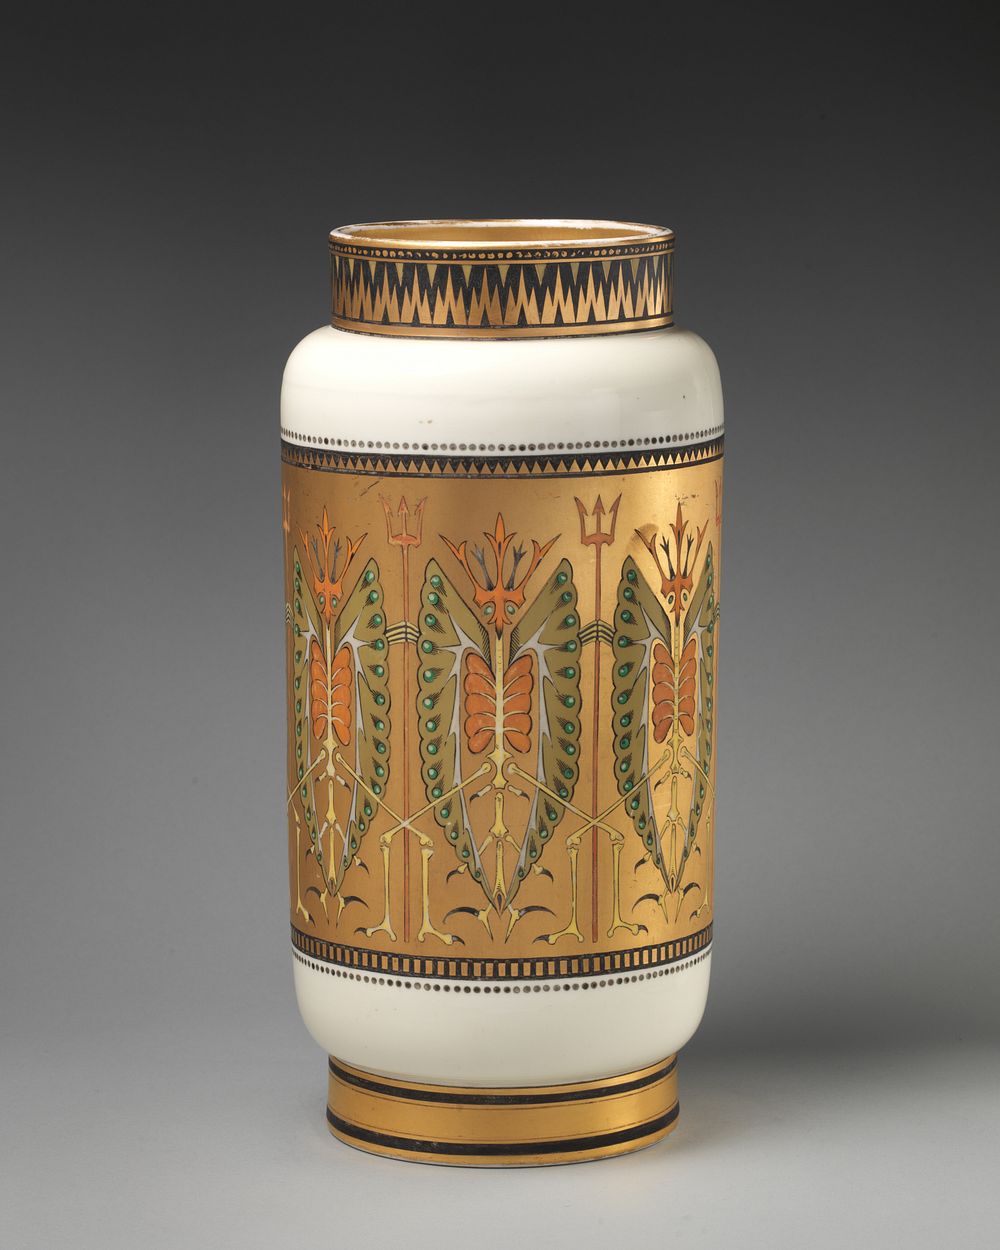 Vase with "Old Bogey" pattern